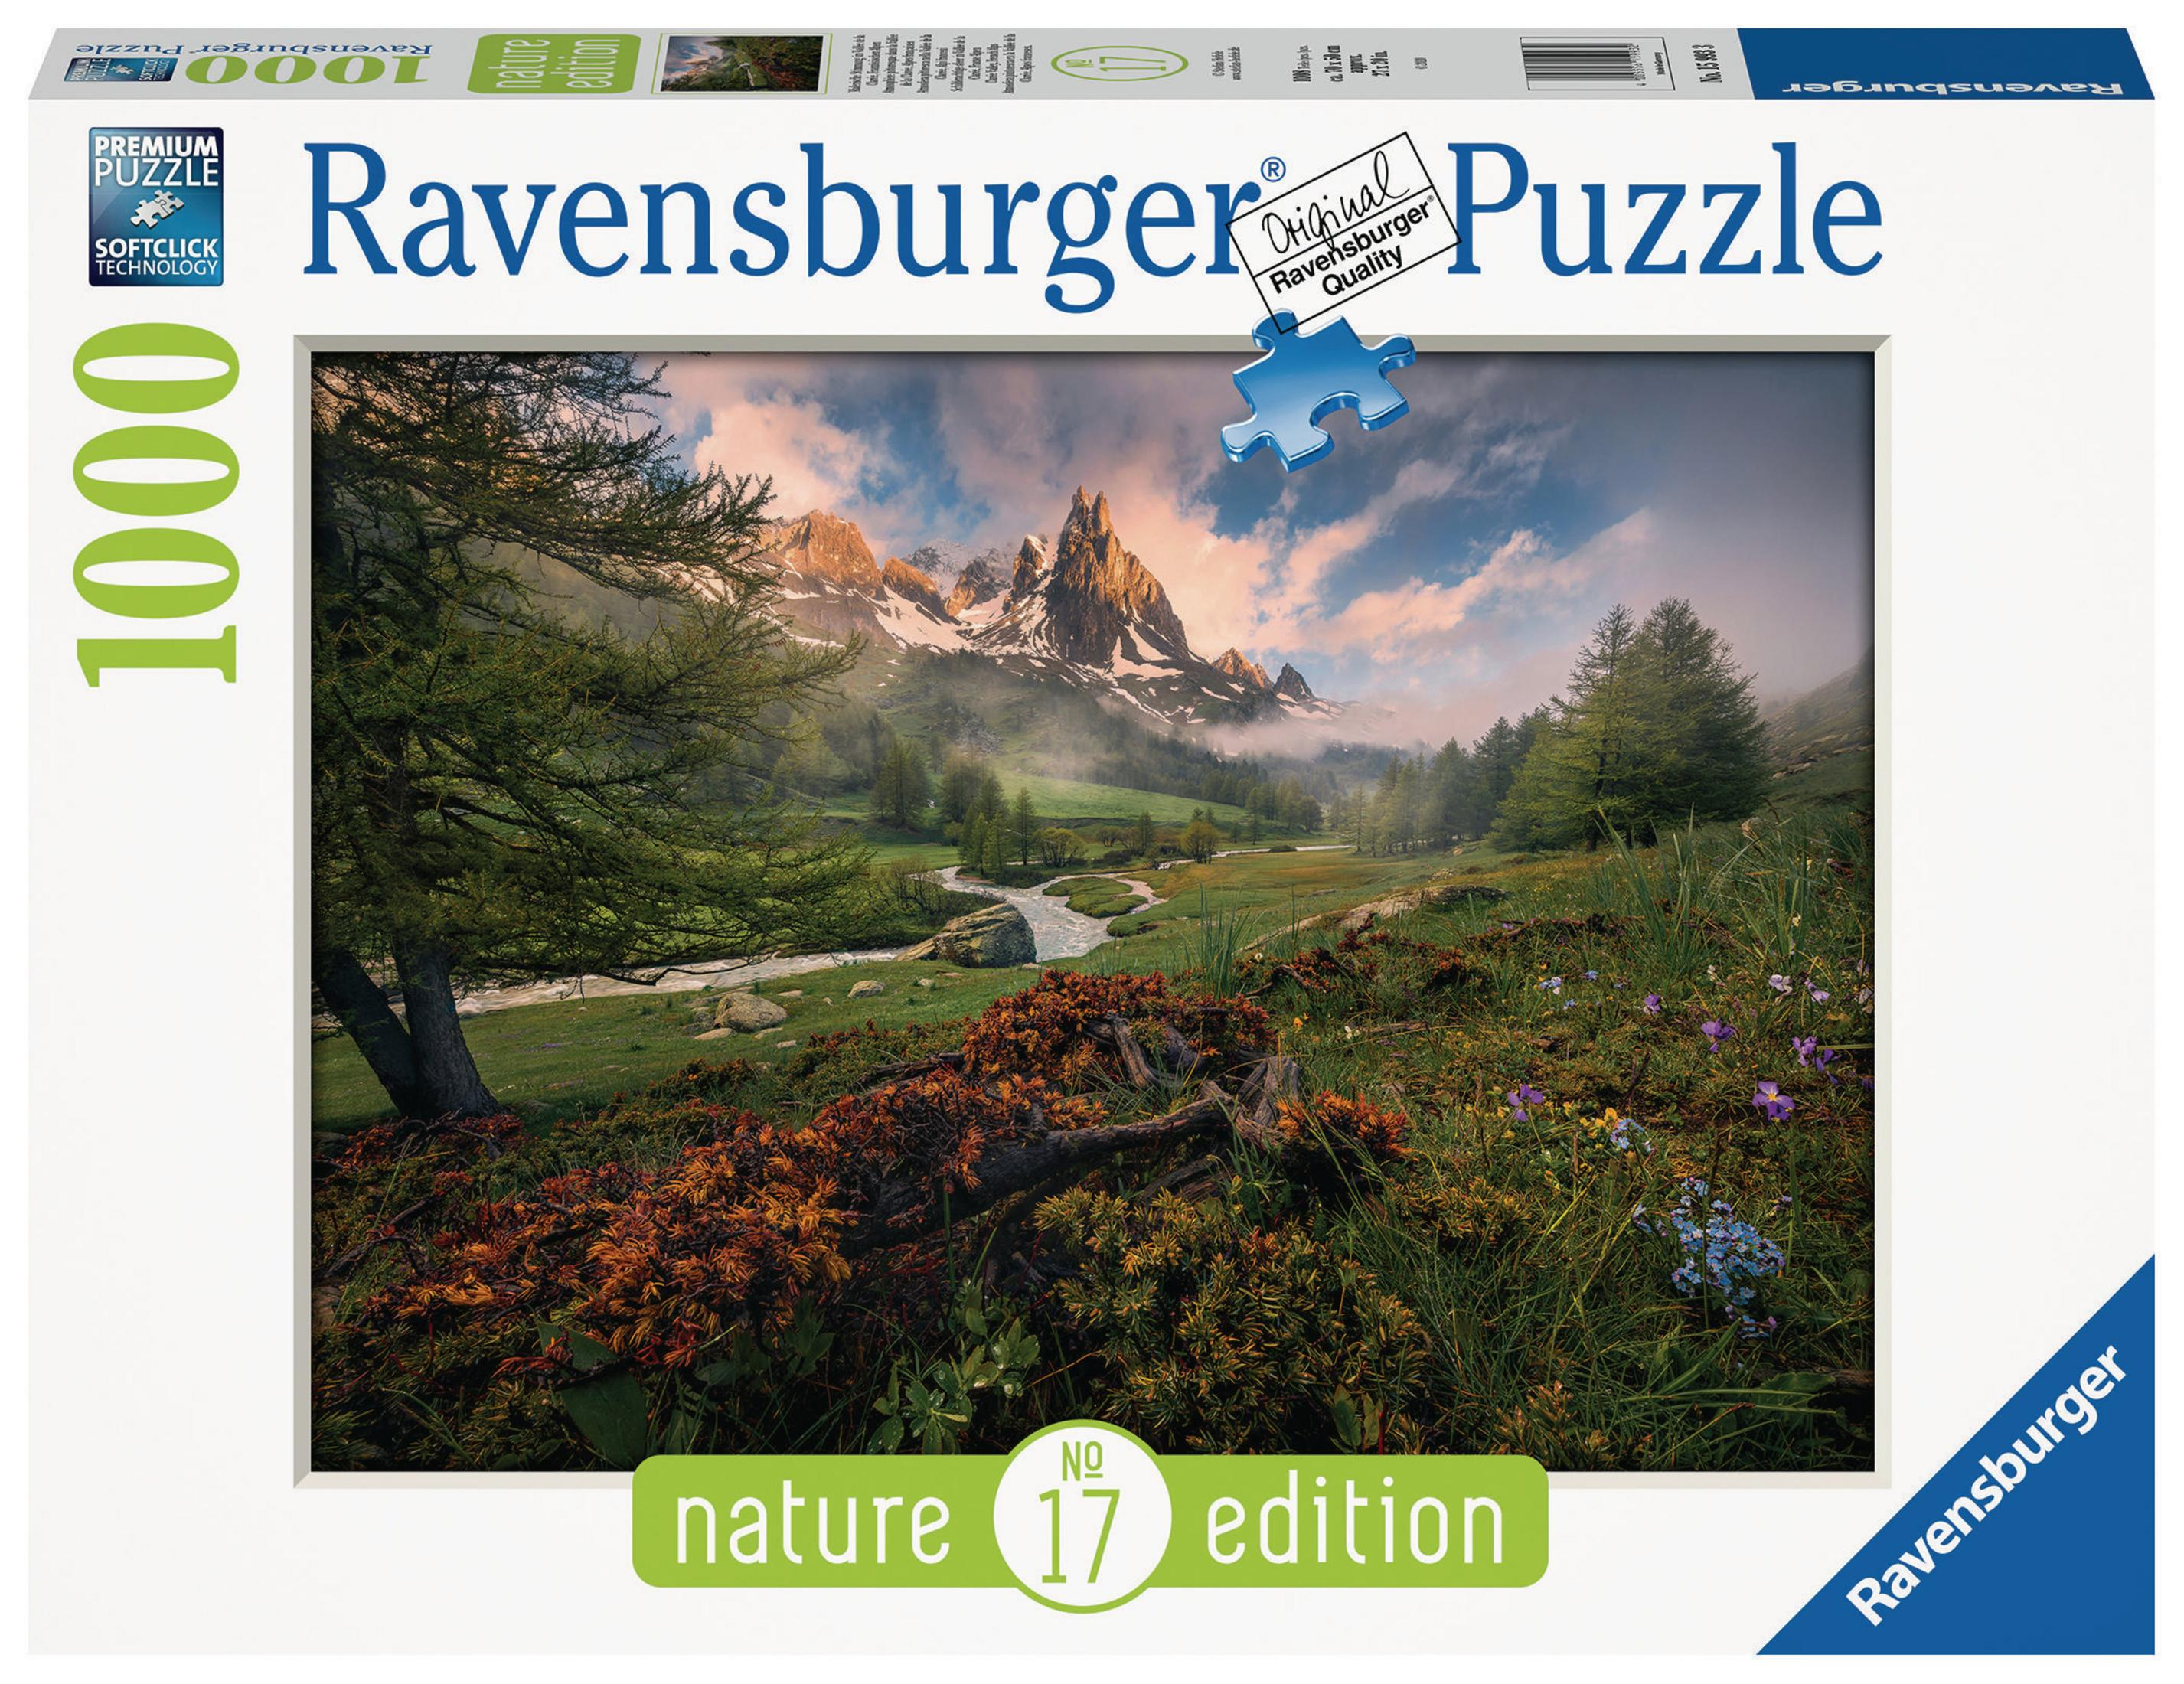 IM Puzzle 15993 STIMMUNG VALLE MALERISCHE RAVENSBURGER